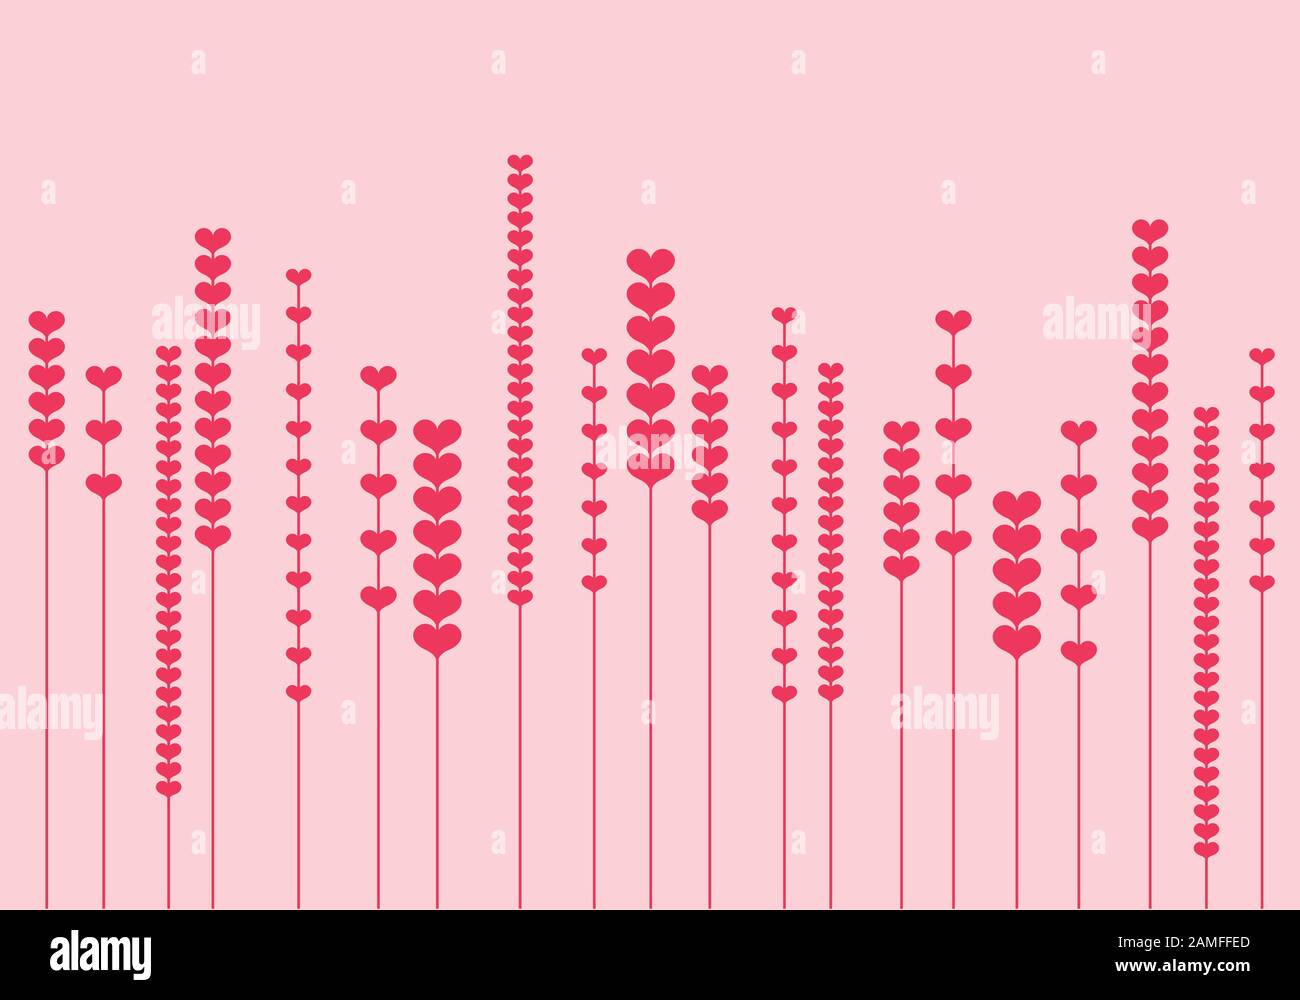 Fleurs de coeur modernes et minimalistes sur fond rose, illustration vectorielle pour cartes de Saint Valentin, anniversaire, art mural, décoration de maison Illustration de Vecteur